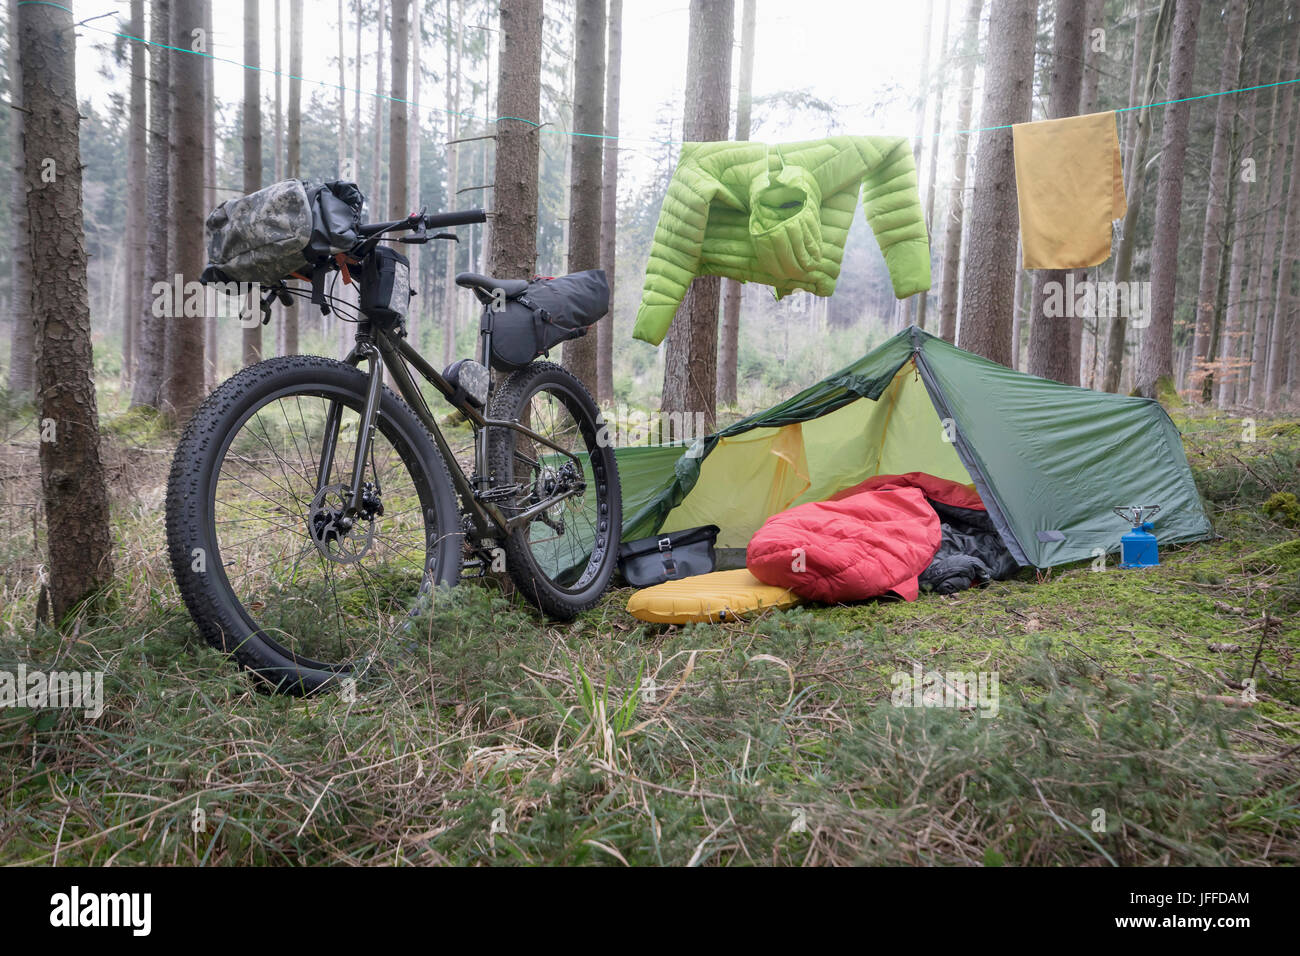 Mountain-Bike von Baumstämmen mit Zelt und Wäscheleine durch es im Wald geparkt Stockfoto